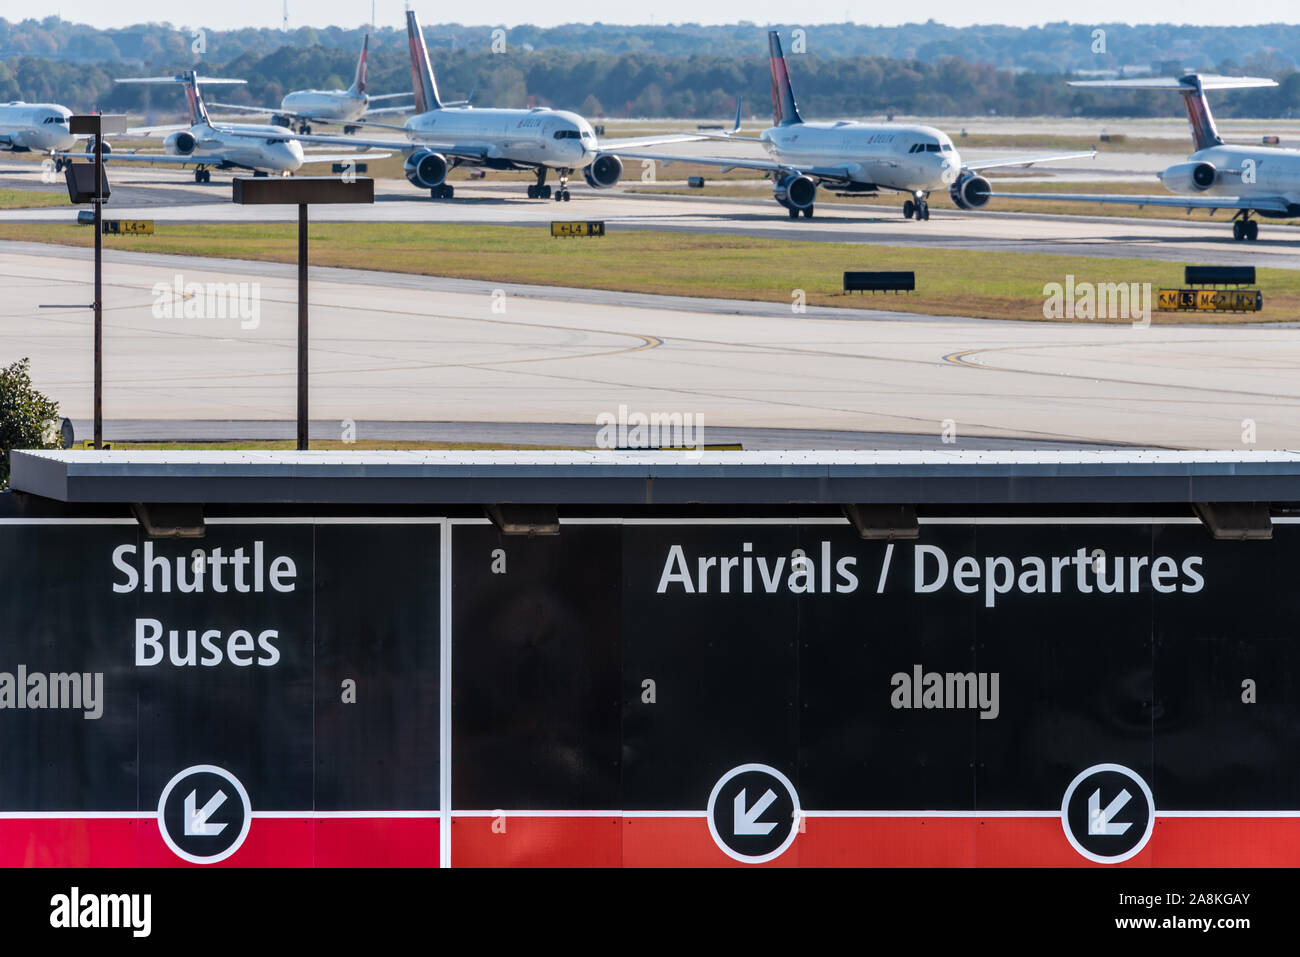 Longue ligne de jets de Delta Air Lines en attente de décoller à l'aéroport international Hartsfield-Jackson d'Atlanta (l'aéroport le plus achalandé au monde) à Atlanta, GA. Banque D'Images